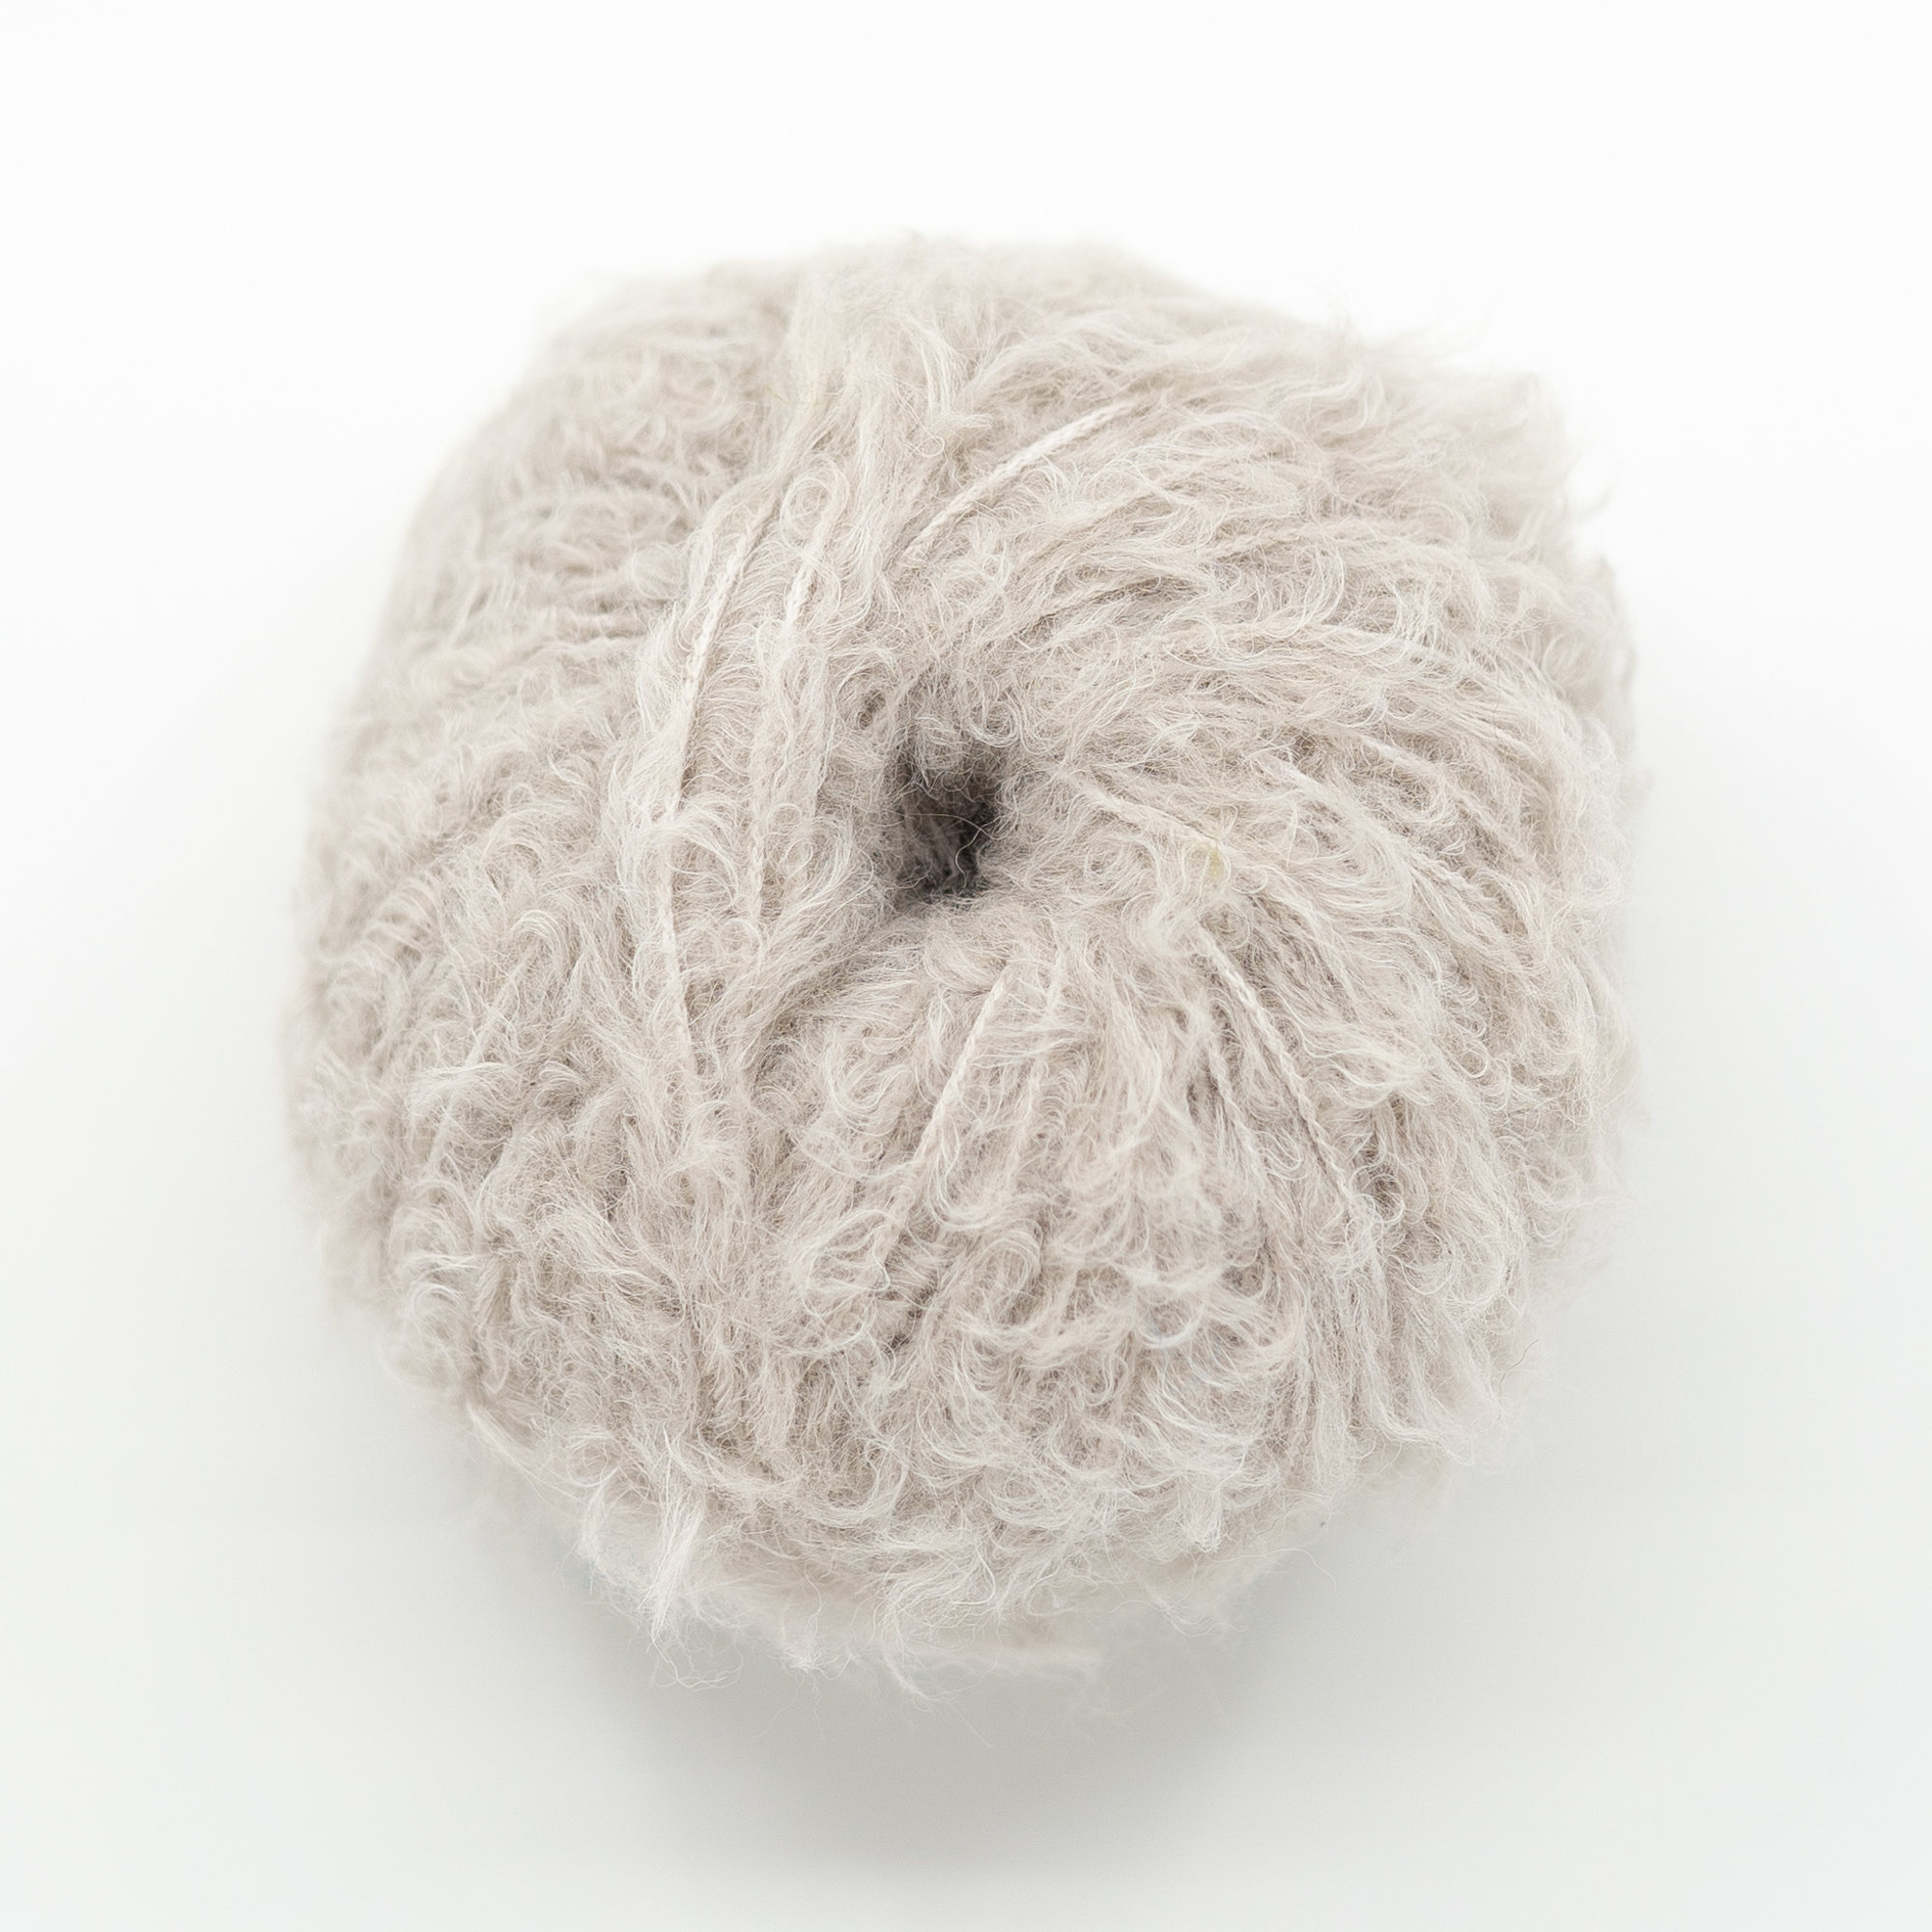  - Fluffy fur yarn | Wild & beige wool - by HipKnitShop - 05/09/2021